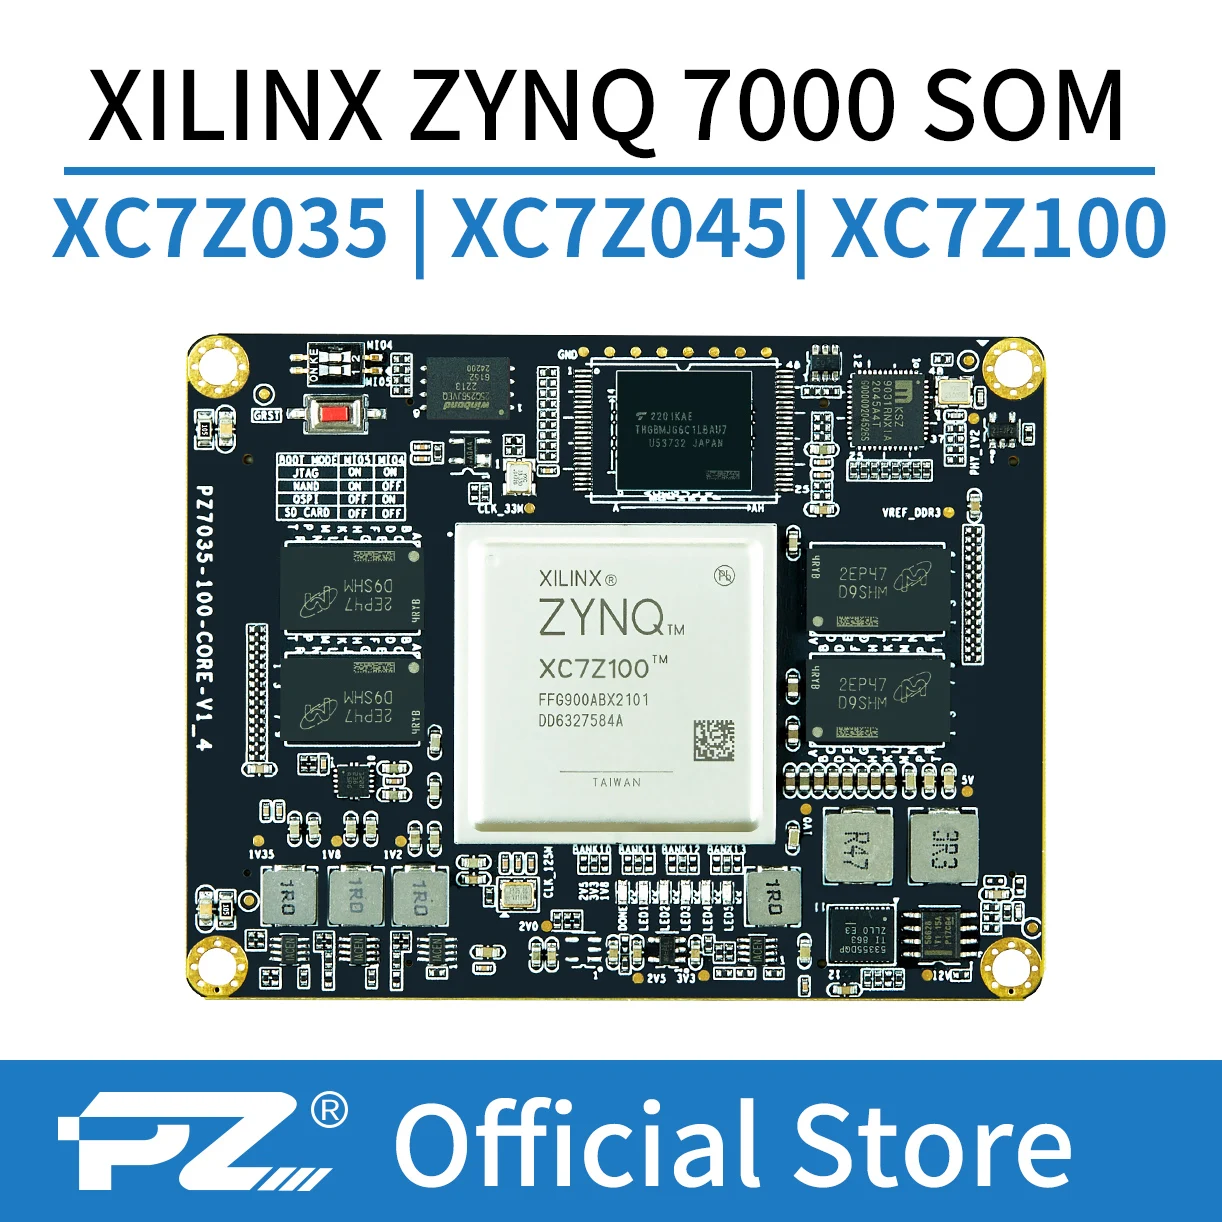 PUZHI SoM 7035 7045 7100: Xilinx SoC ZYNQ 7000 7Z030 7Z035 7Z045 7Z100 FPGA Core Board Industrial Grade  System on Module 900I